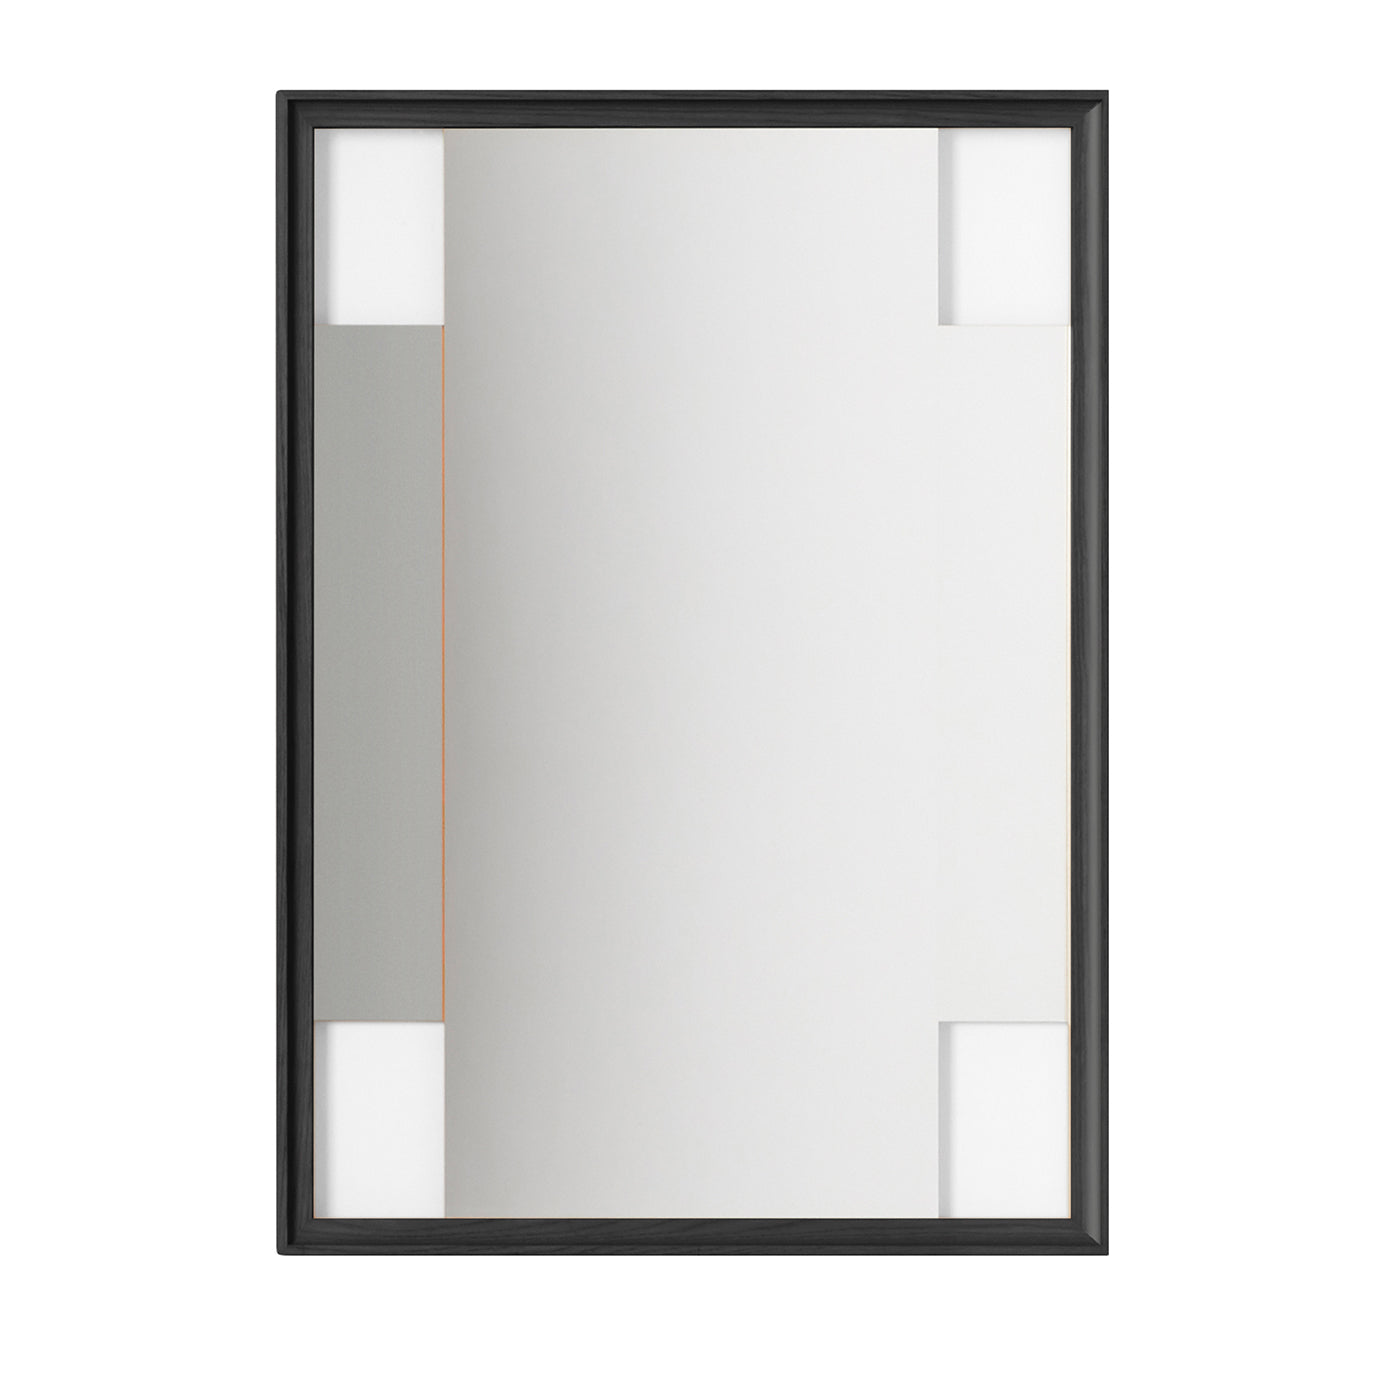 Plazo 2 CROSSING PATHS Espejo rectangular de Ron Gilad nº 1 - Vista principal